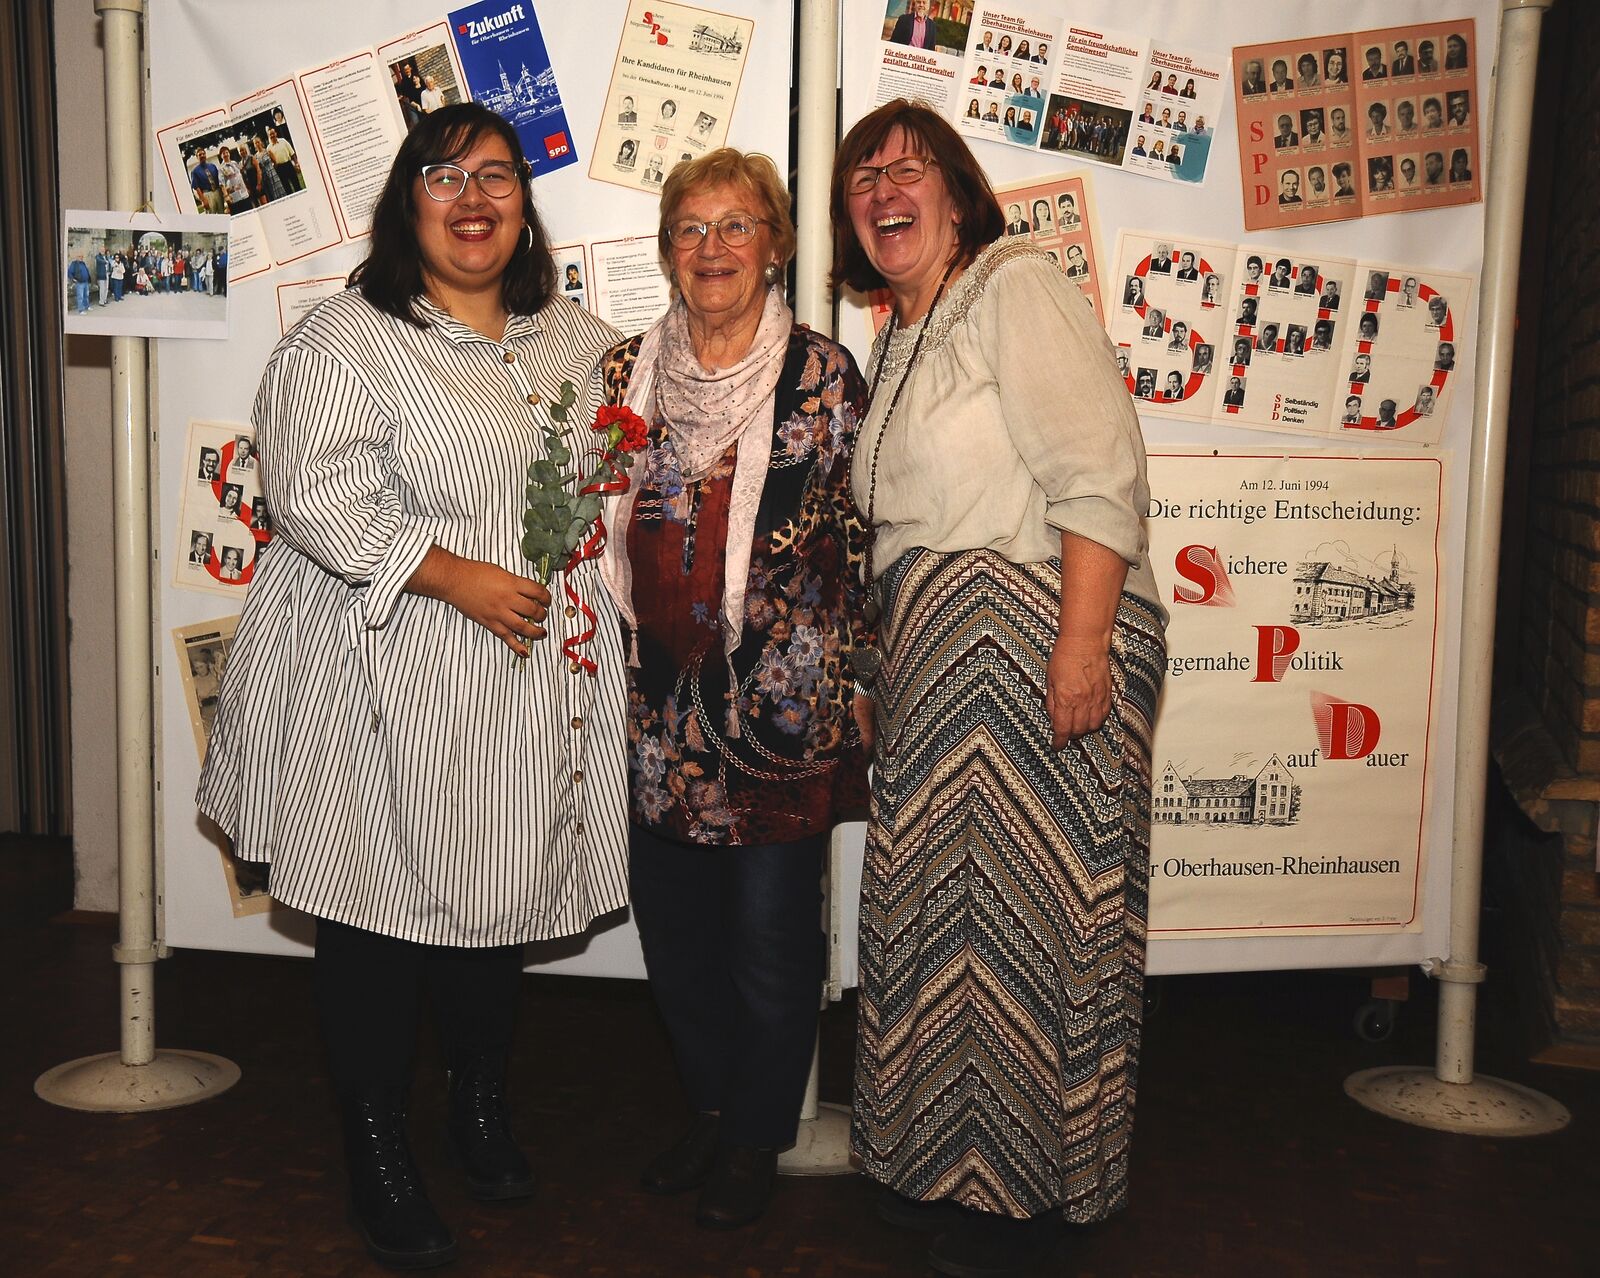 Drei Generationen Frauen-Power in der SPD